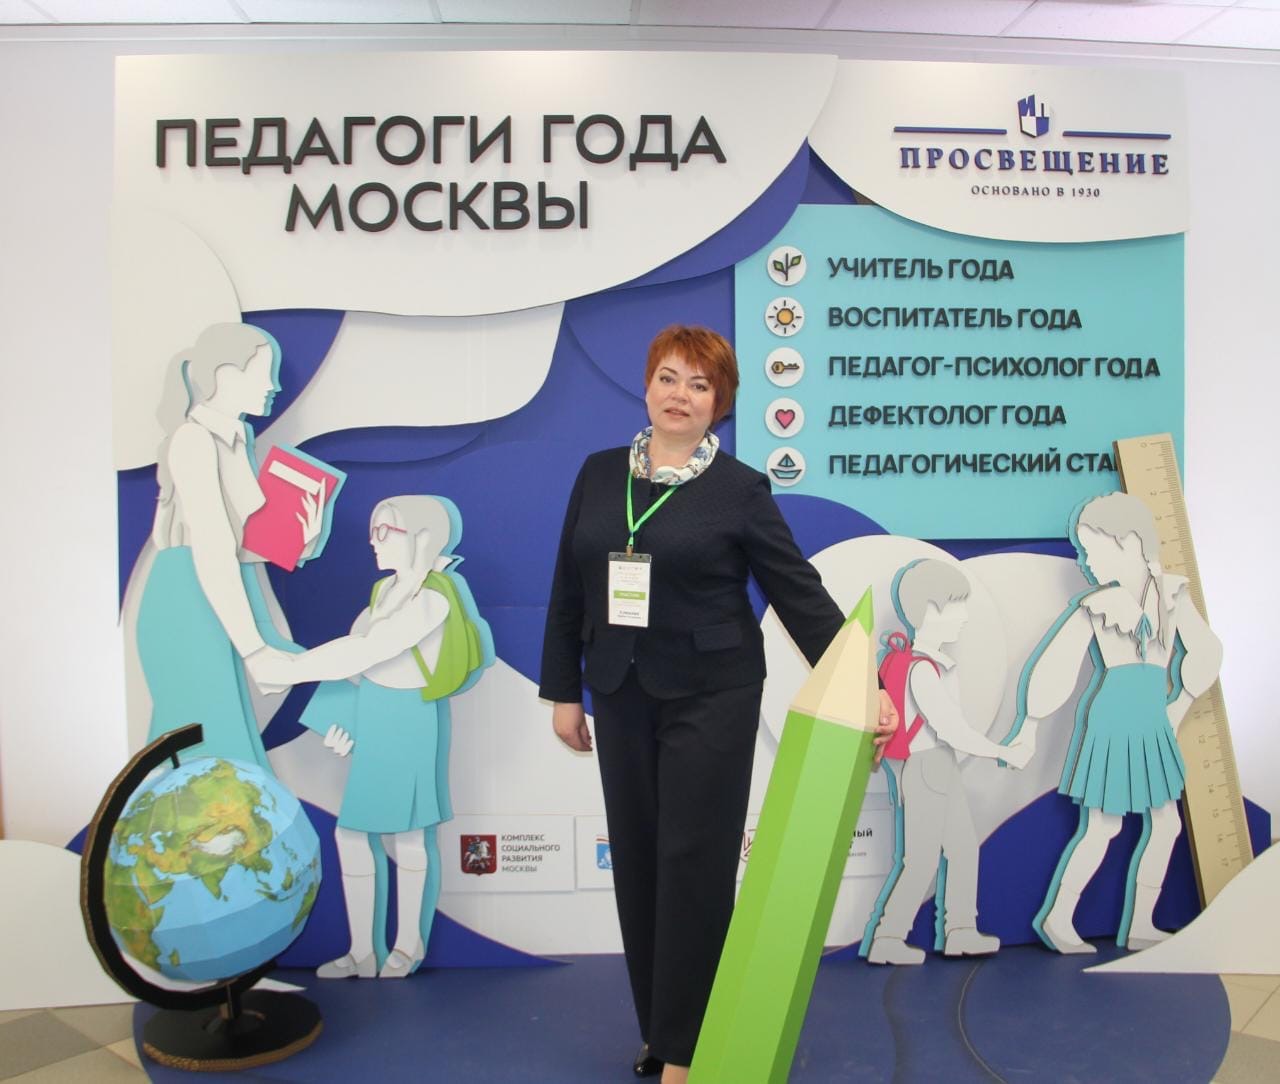 Конкурс для педагогов гордость россии